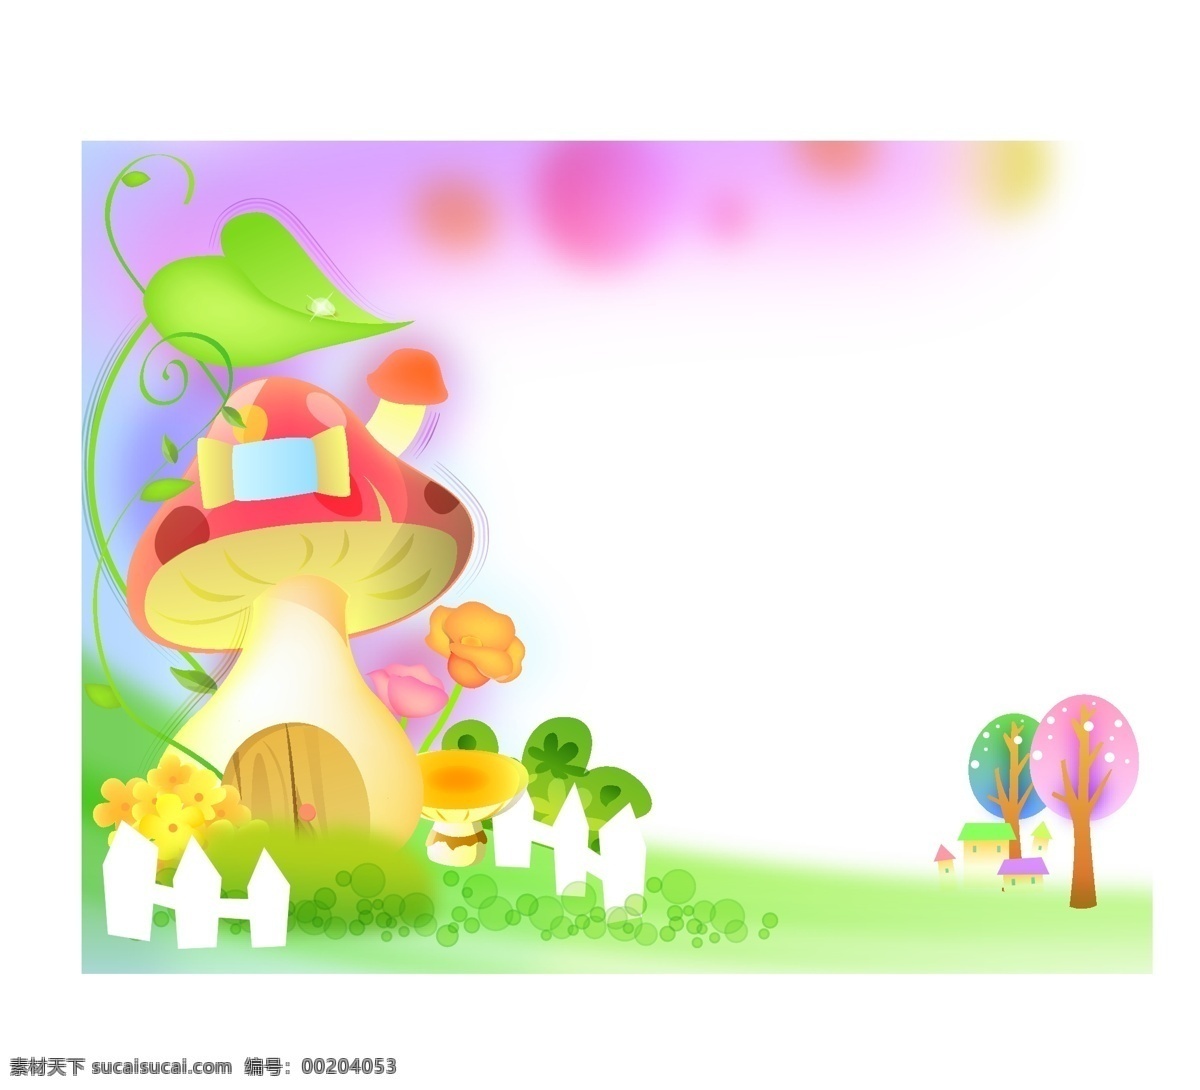 草地 动画 梦幻 蘑菇 树木 小草 幼儿园图库 房 矢量 模板下载 梦幻蘑菇房 蘑菇房 动画背景图 幼儿园 设计素材 海报背景图